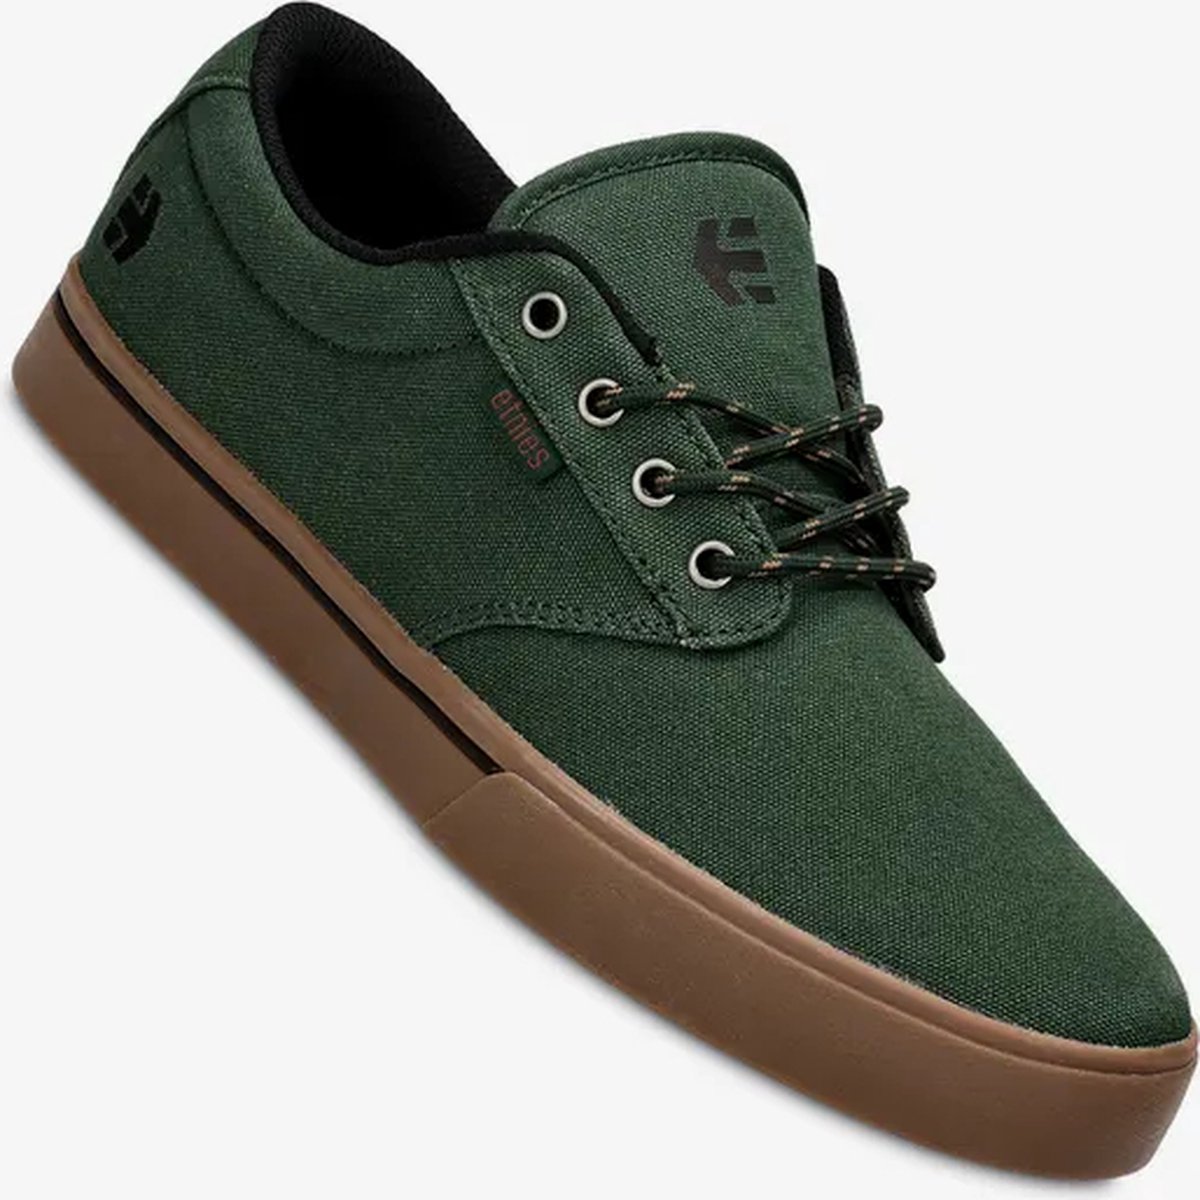 Etnies - Jameson - 2 Eco - Maat 42.5 - Groen - Zwart - Skate schoen - Casual schoen